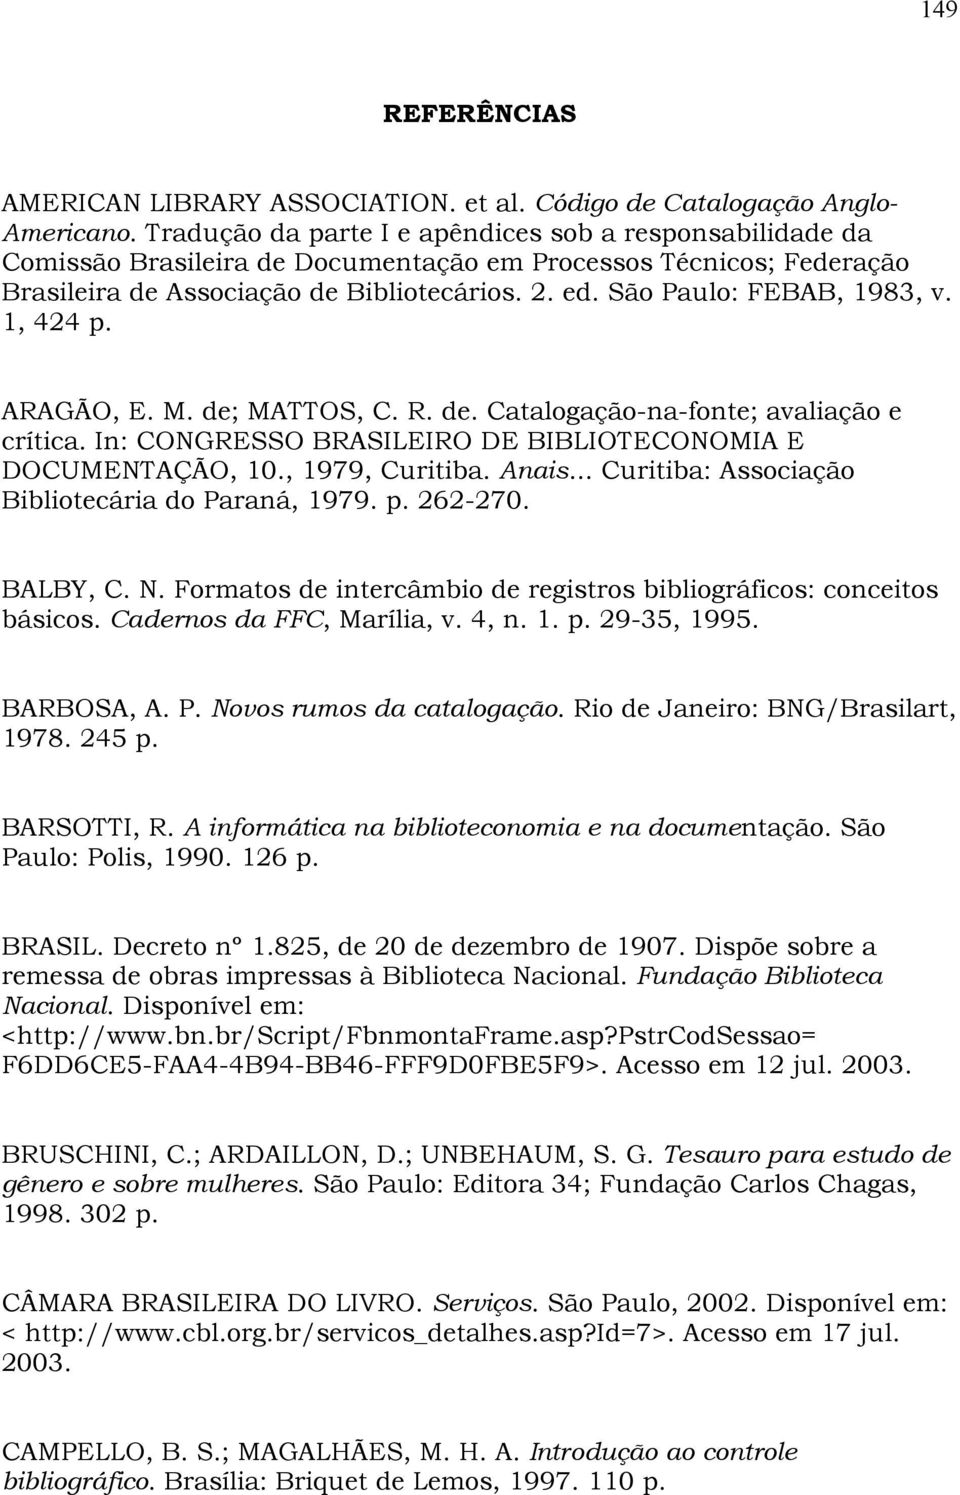 São Paulo: FEBAB, 1983, v. 1, 424 p. ARAGÃO, E. M. de; MATTOS, C. R. de. Catalogação-na-fonte; avaliação e crítica. In: CONGRESSO BRASILEIRO DE BIBLIOTECONOMIA E DOCUMENTAÇÃO, 10., 1979, Curitiba.